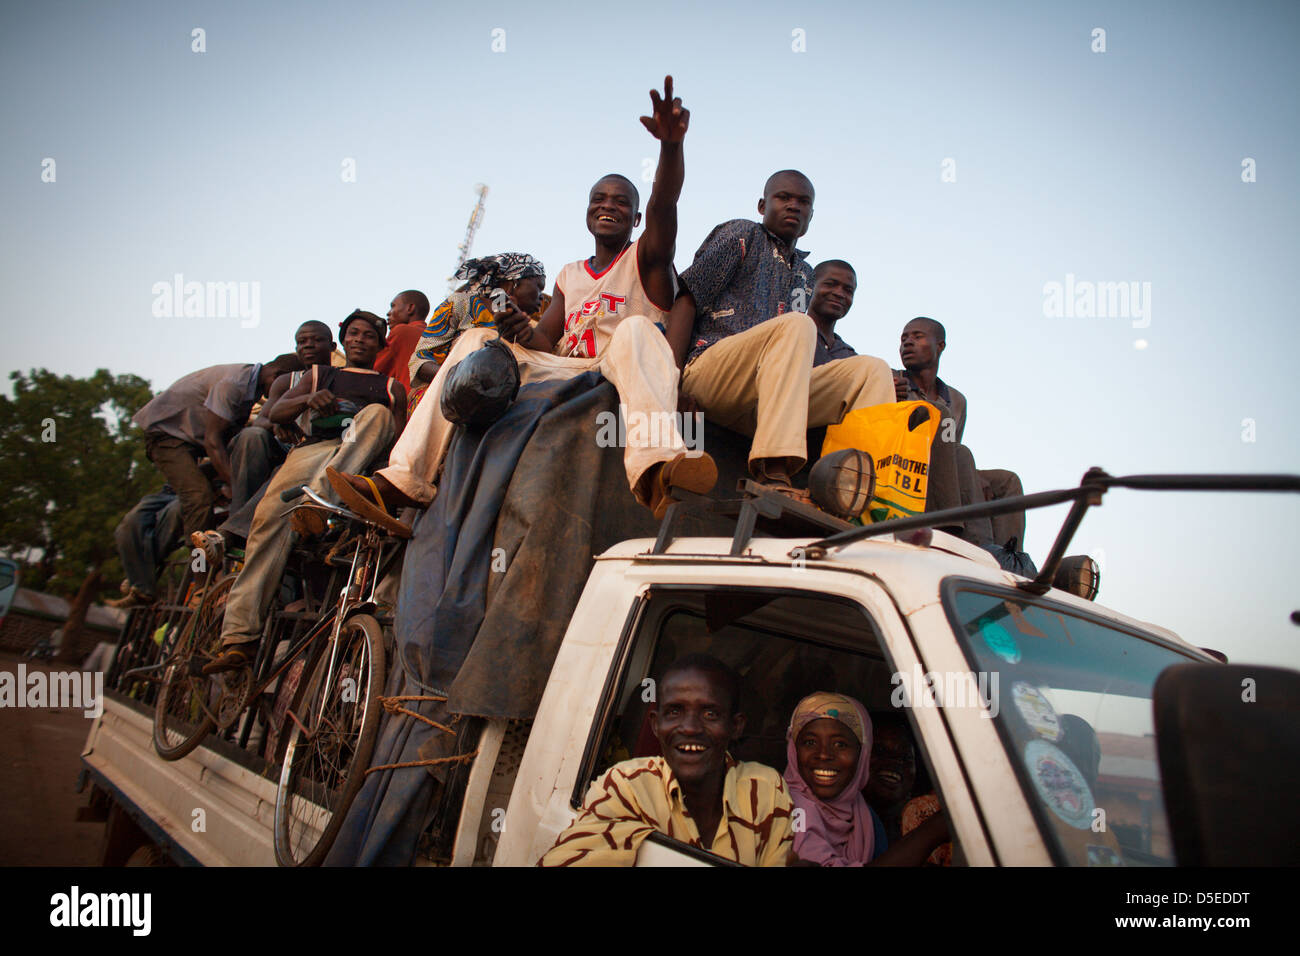 Un bus chargé avec les gens se prépare à quitter Nandom, dans le nord du Ghana, pour le trajet vers le sud. Banque D'Images